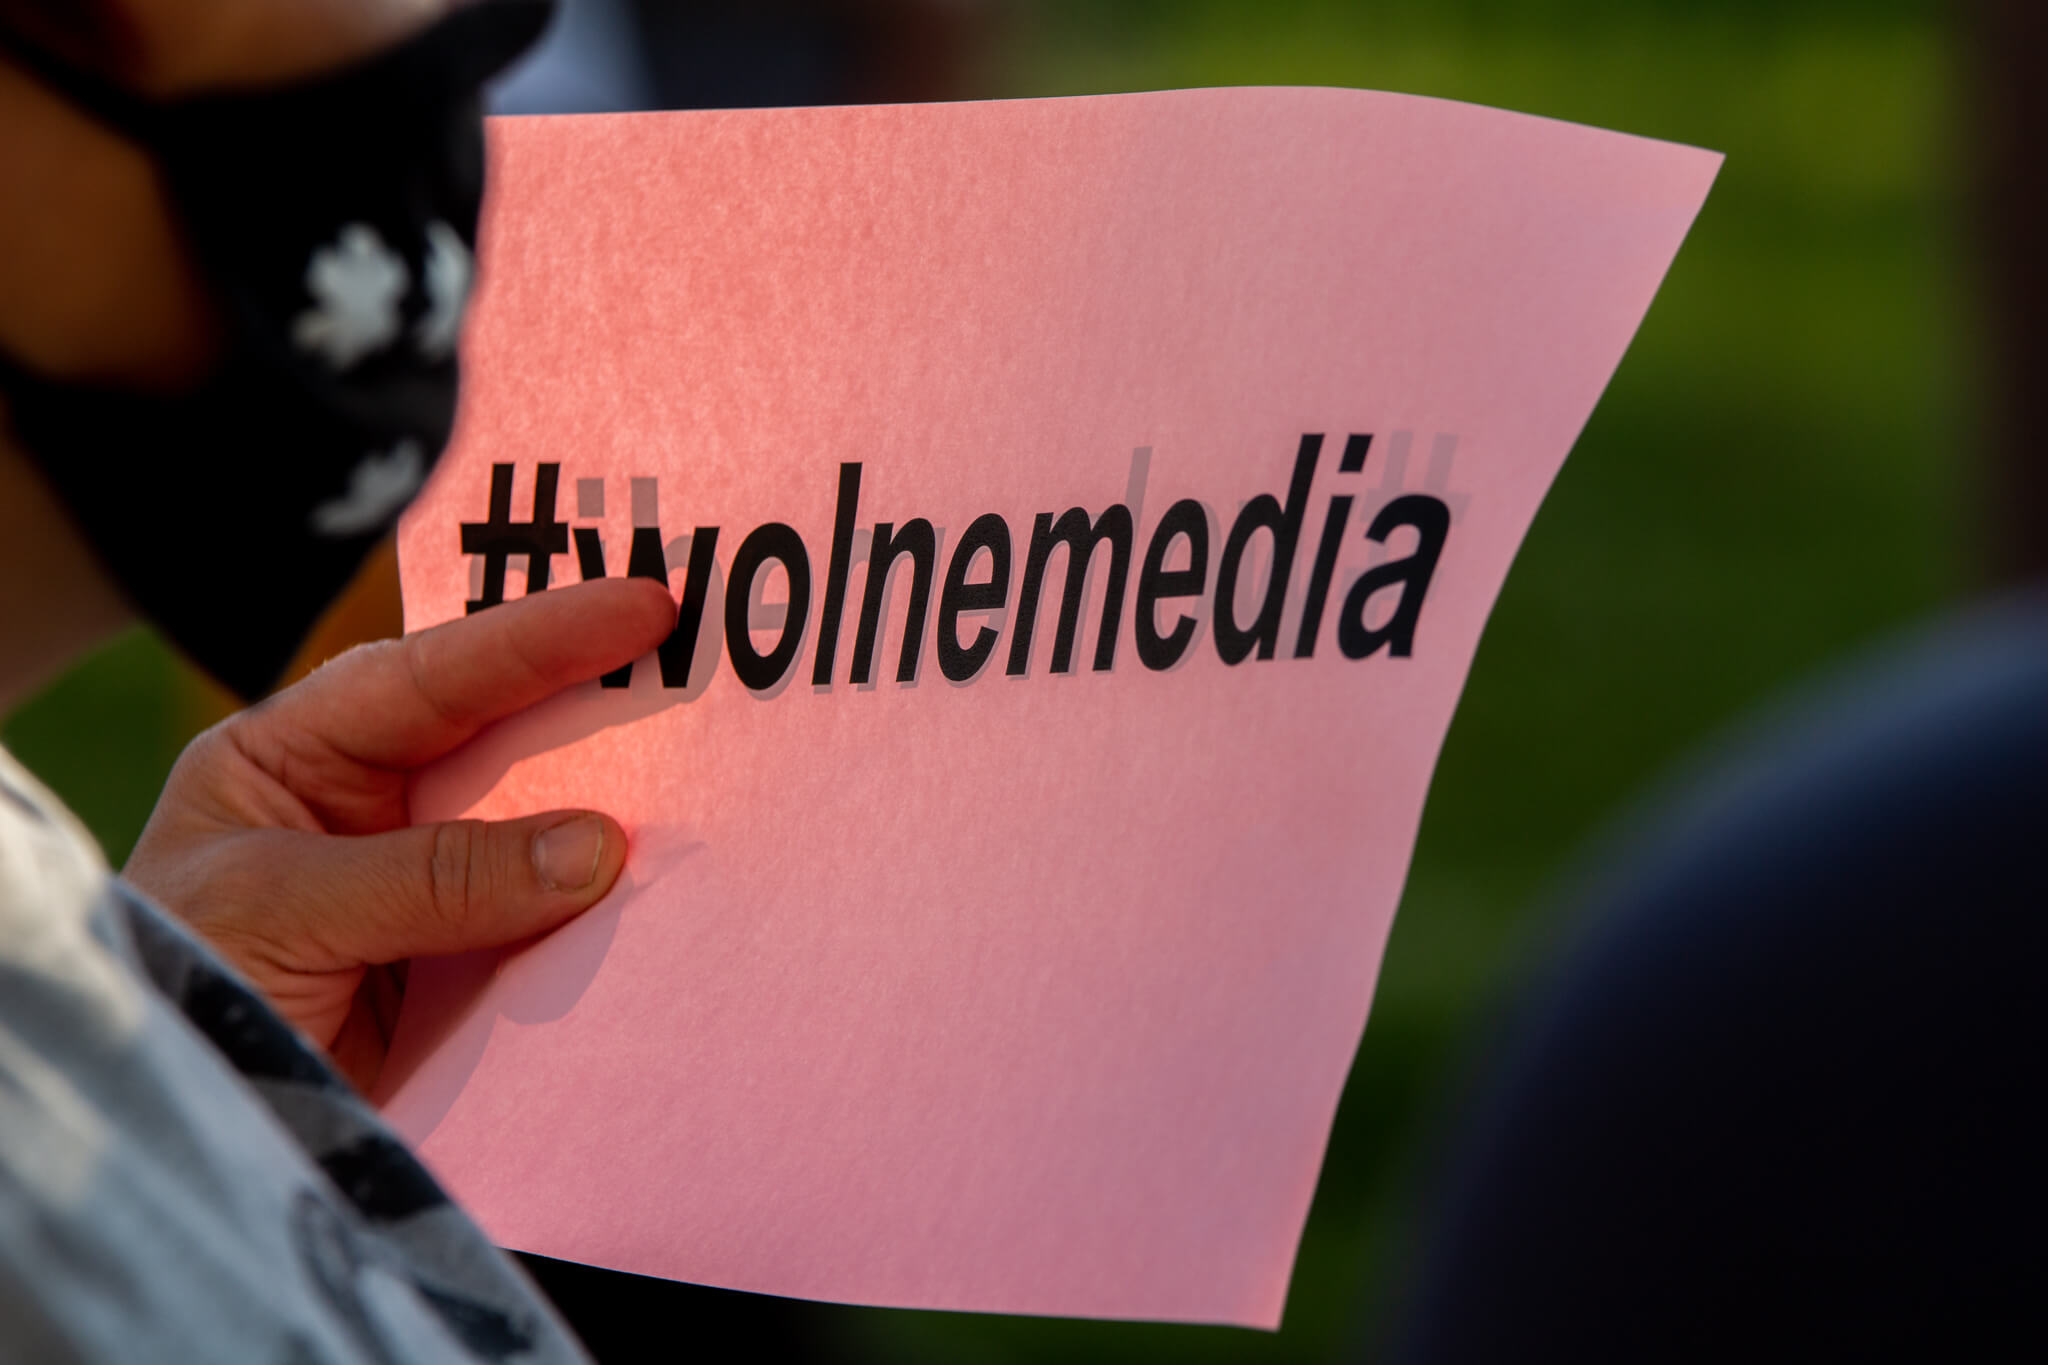 protest w obronie wolnych mediów, lex TVN